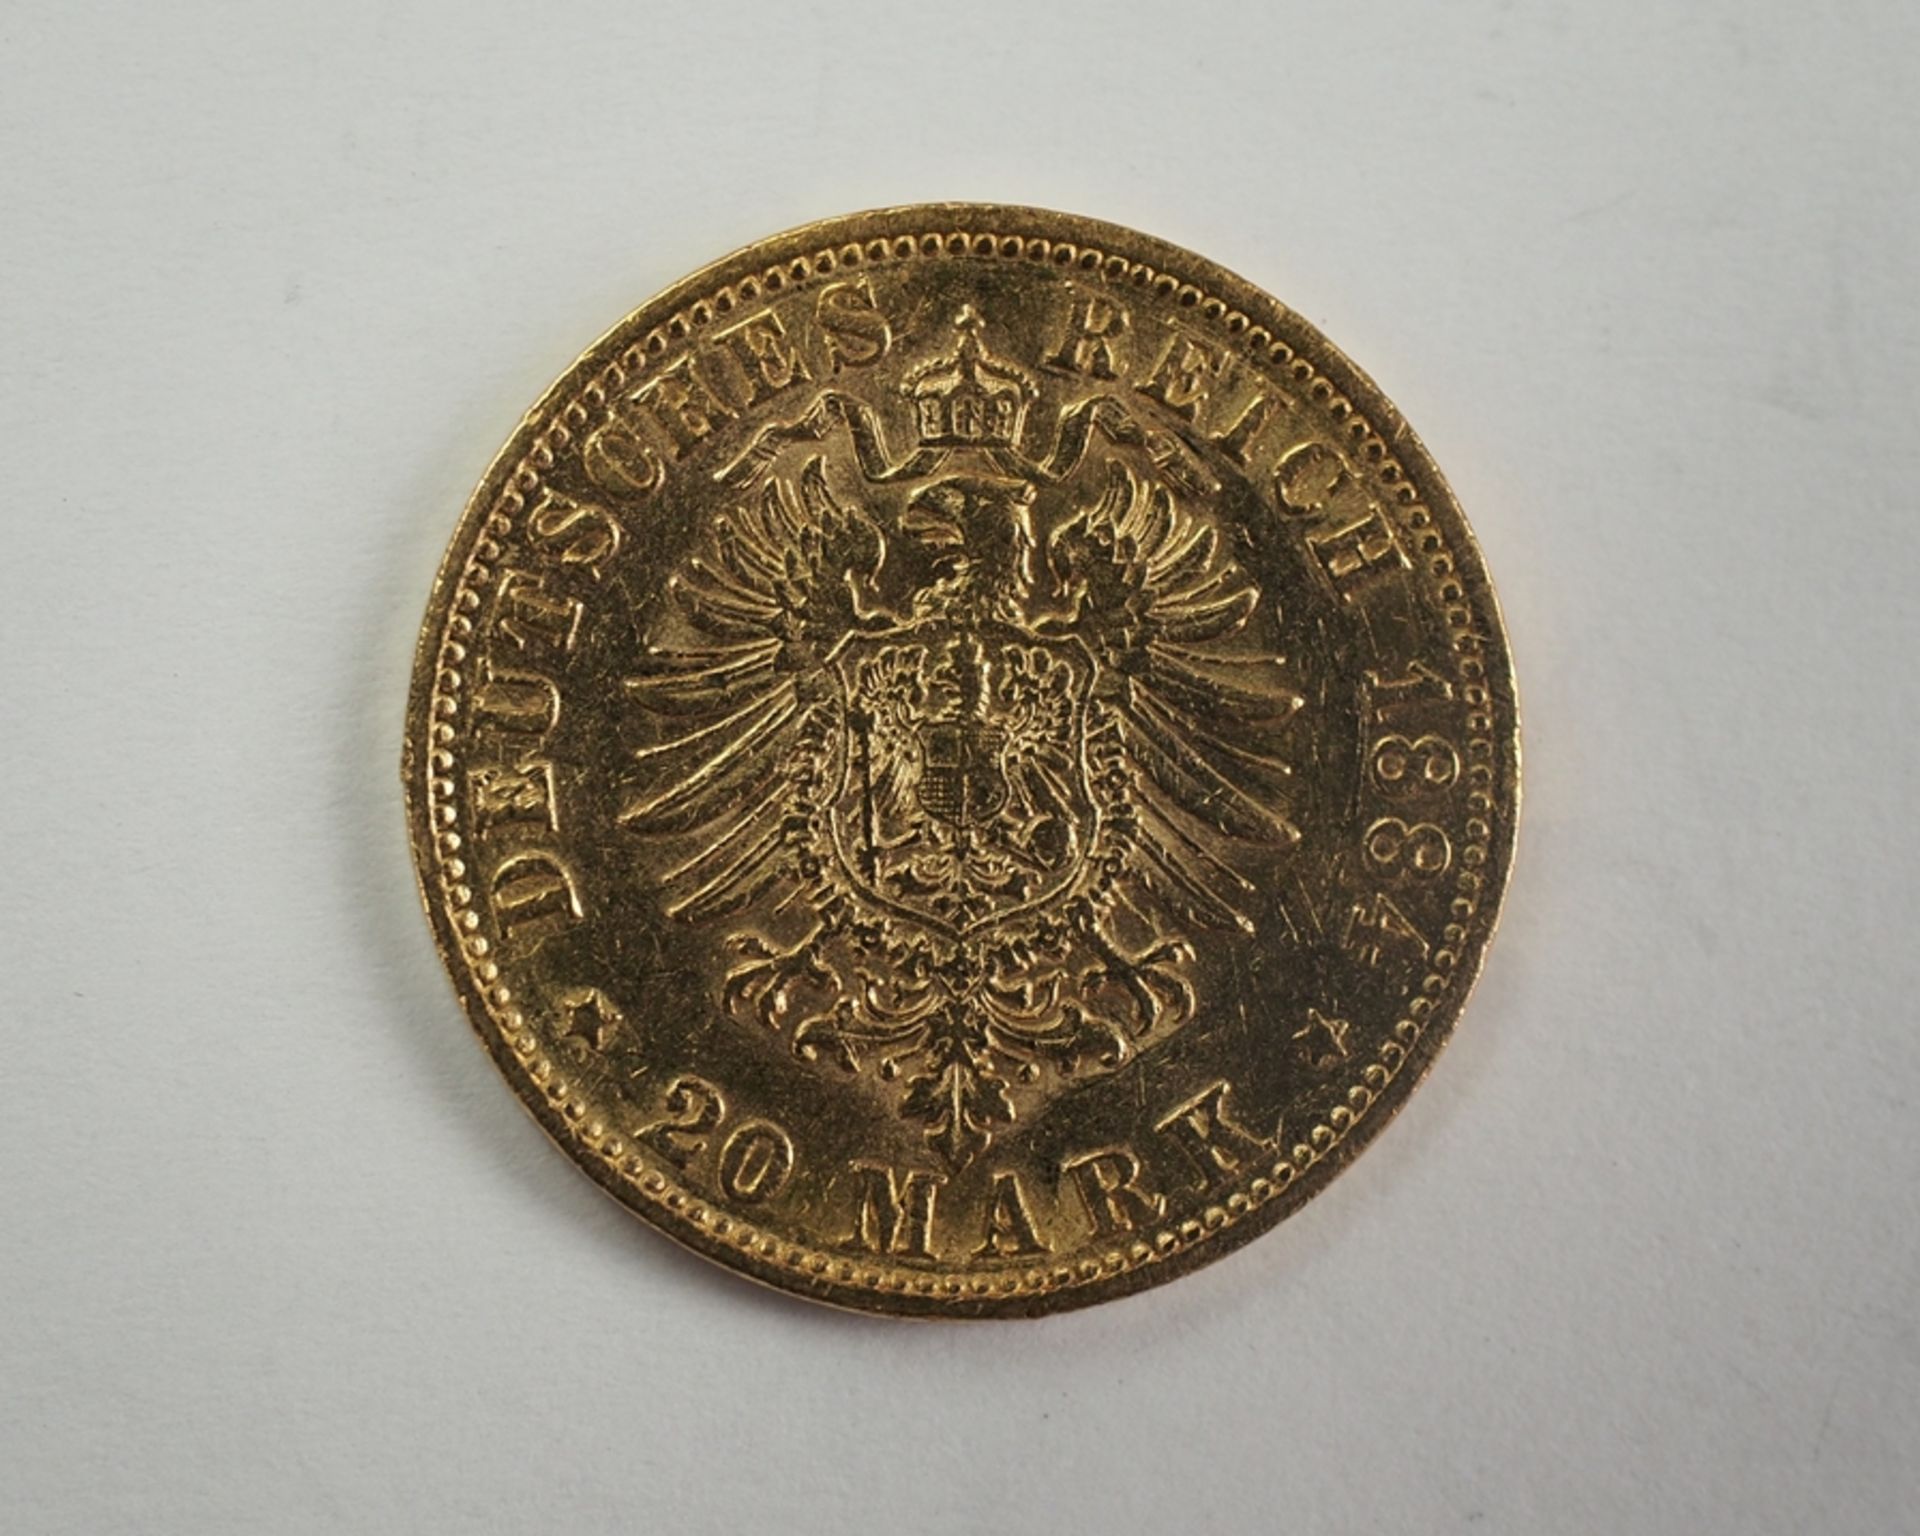 Hamburg: 20 Mark 1884 - GOLD. - Image 3 of 3